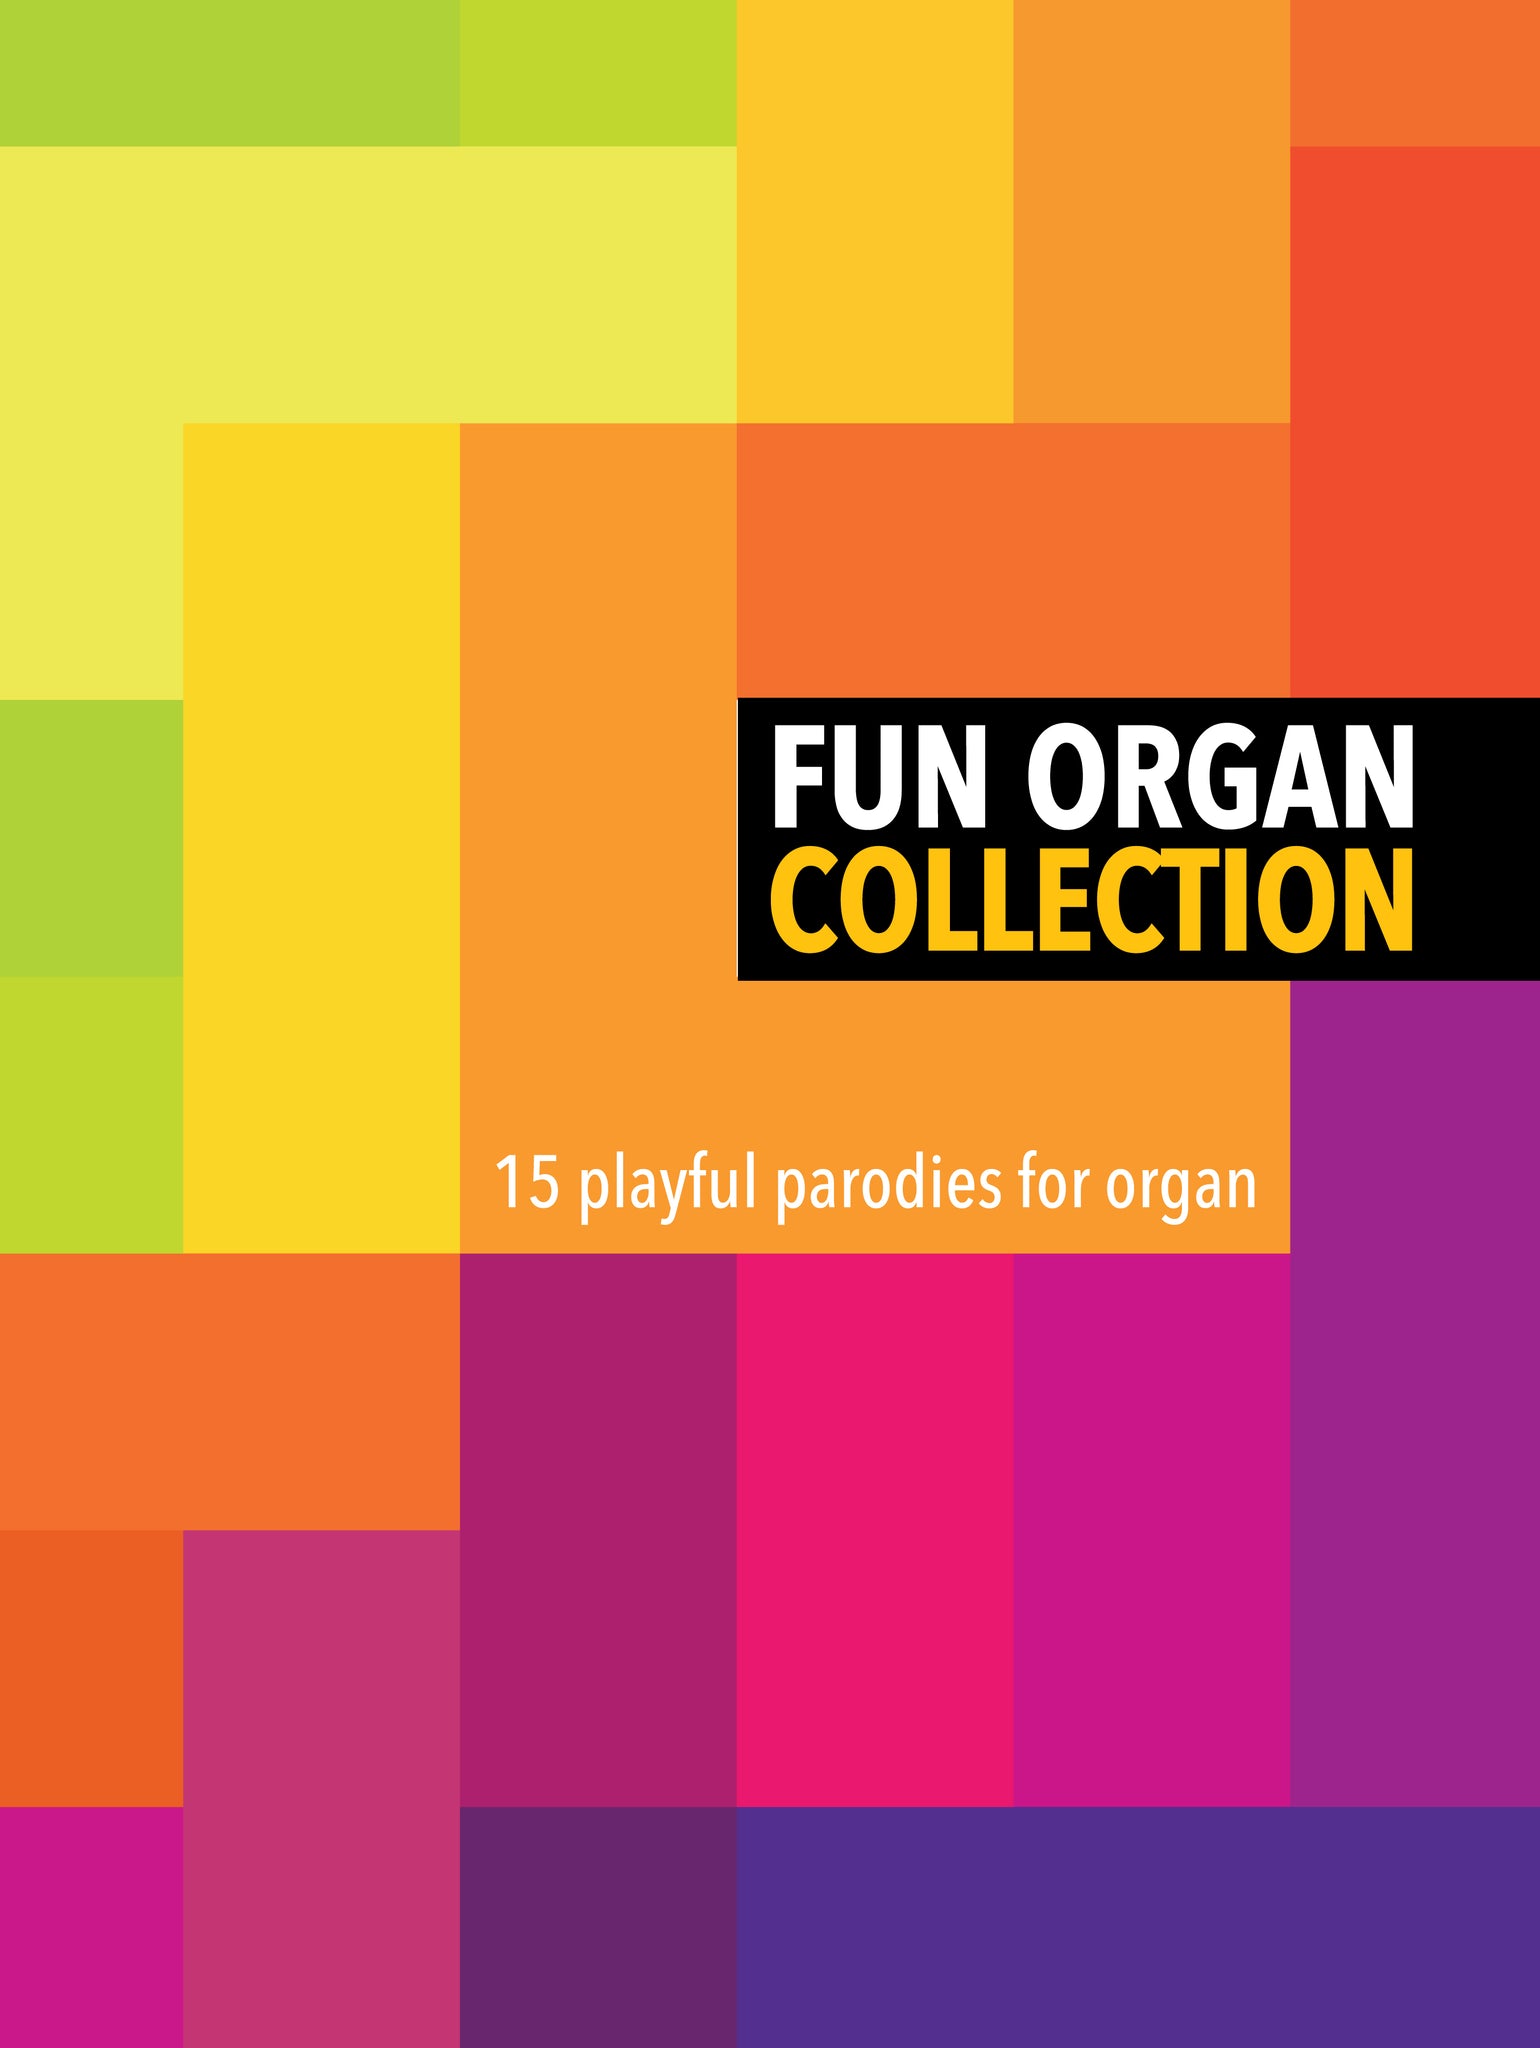 Fun Organ CollectionFun Organ Collection